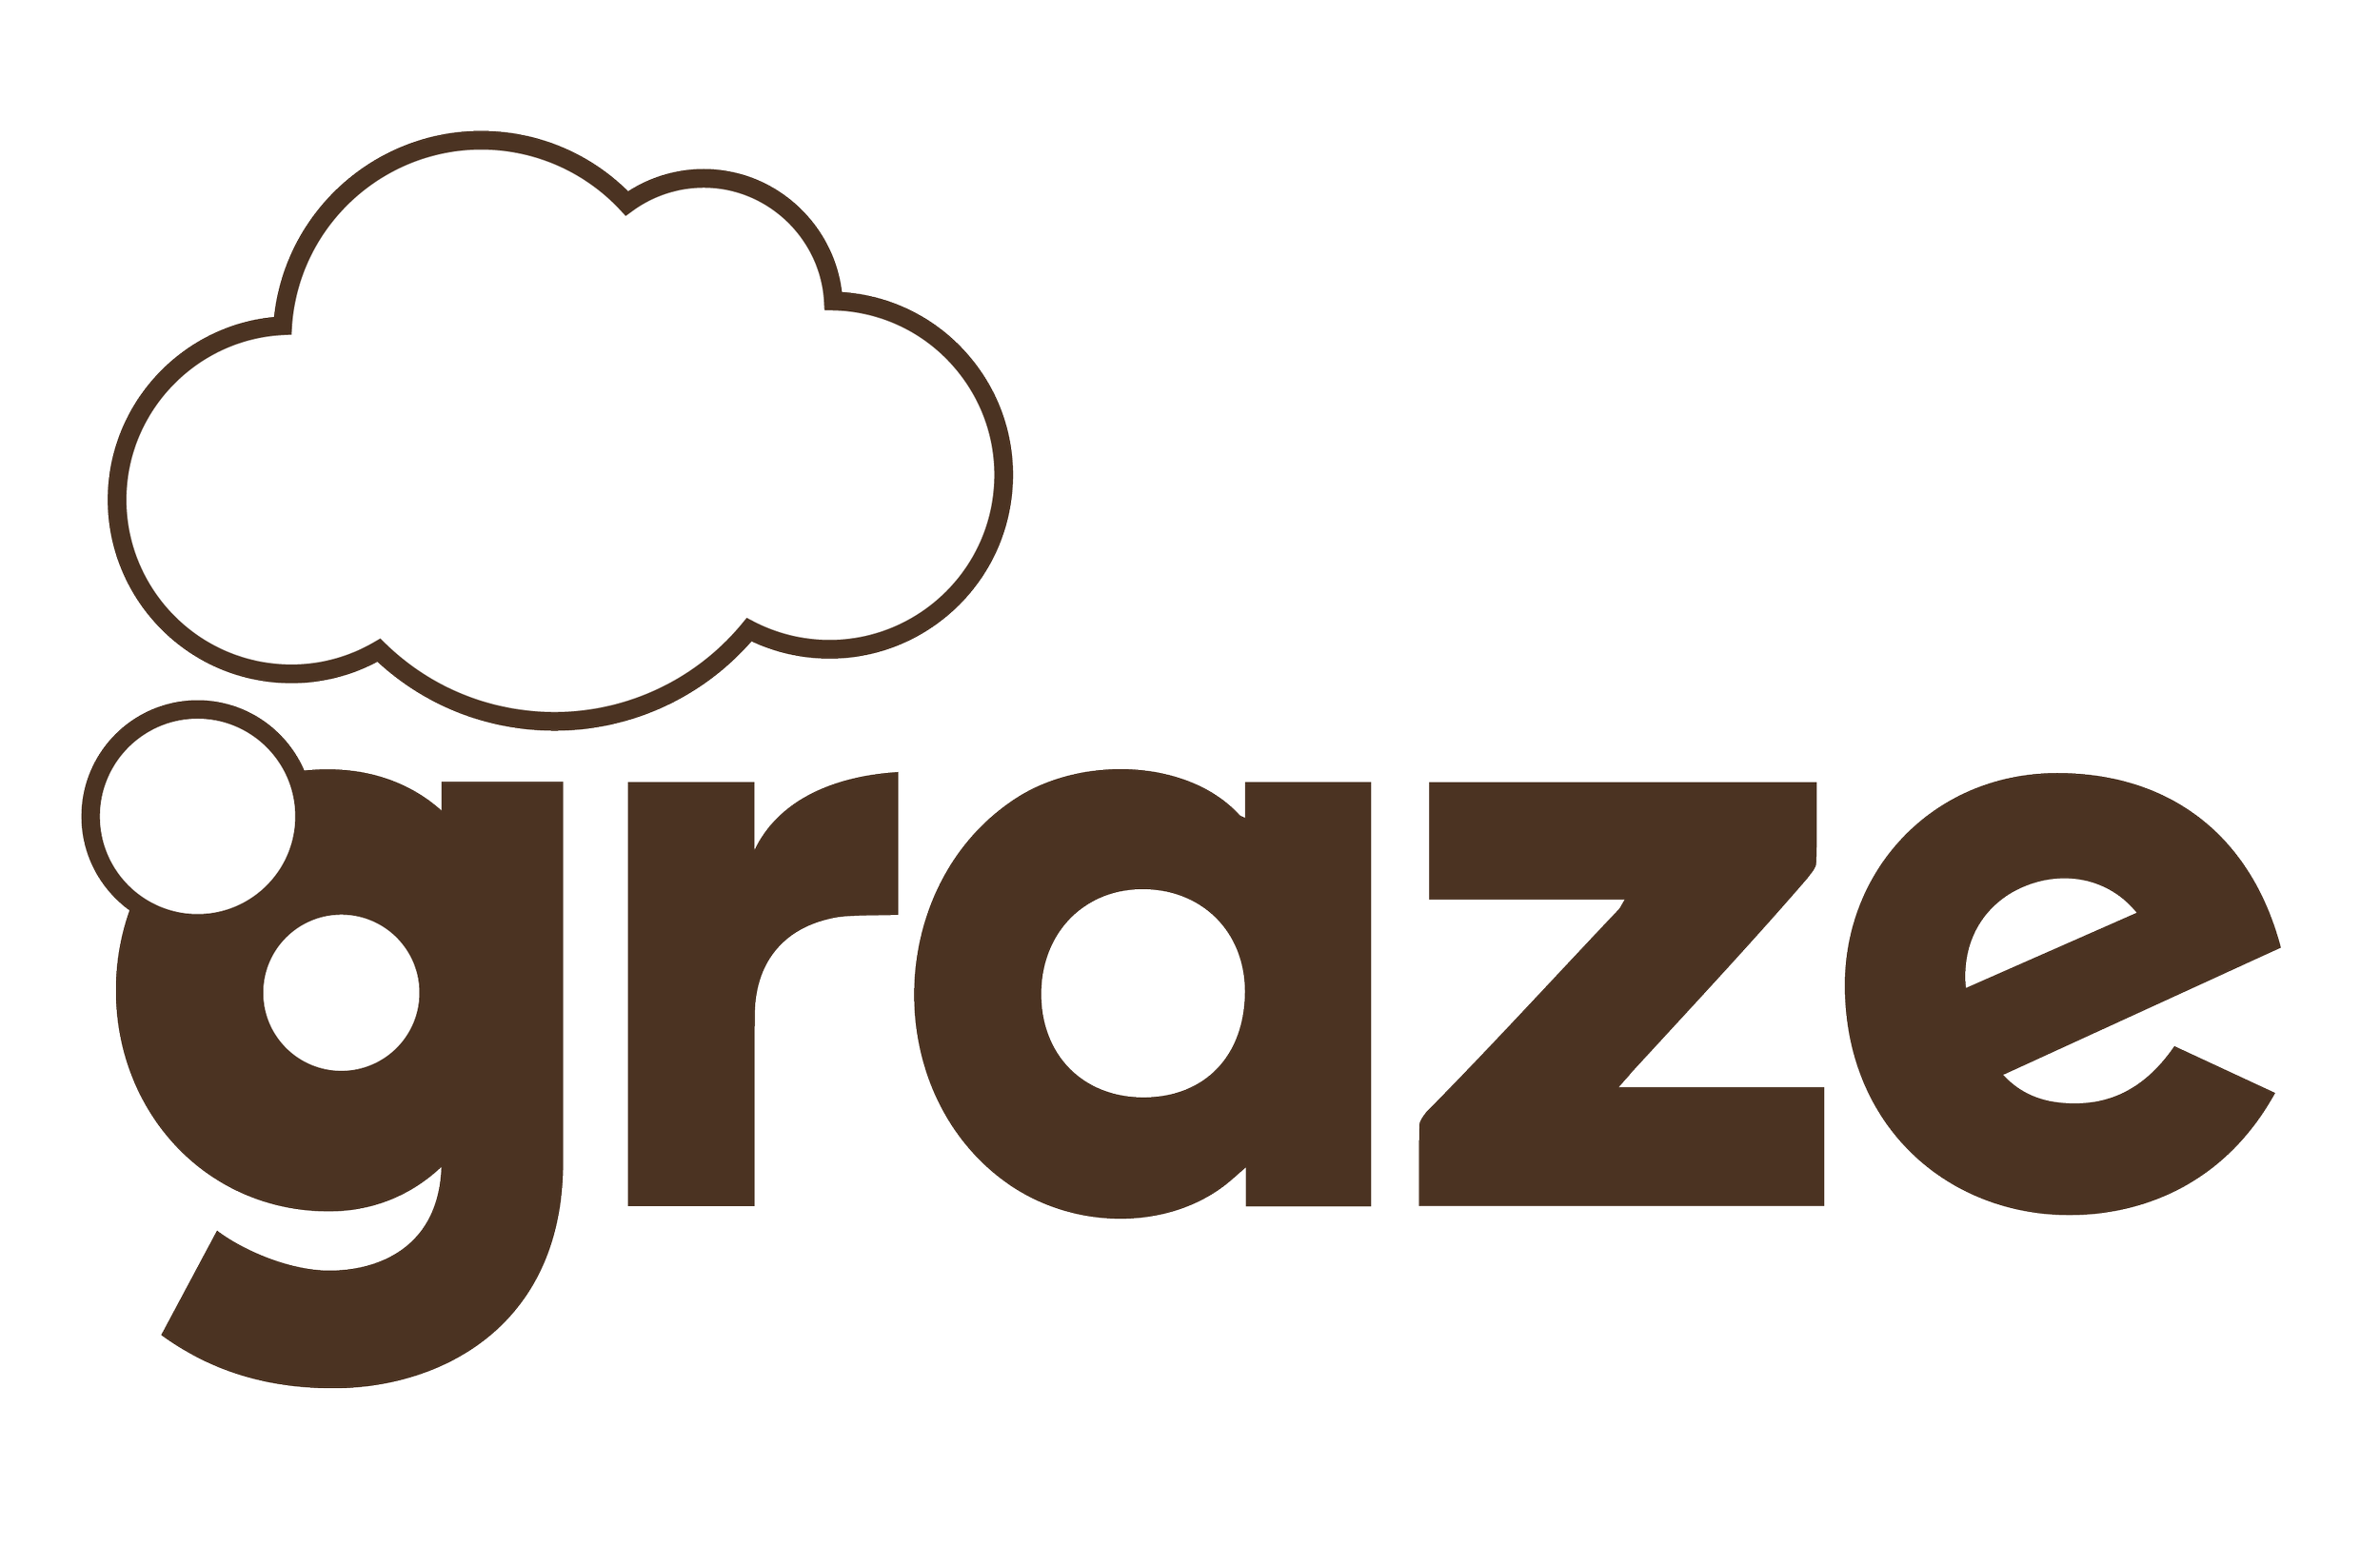 graze hero logo for white background.png